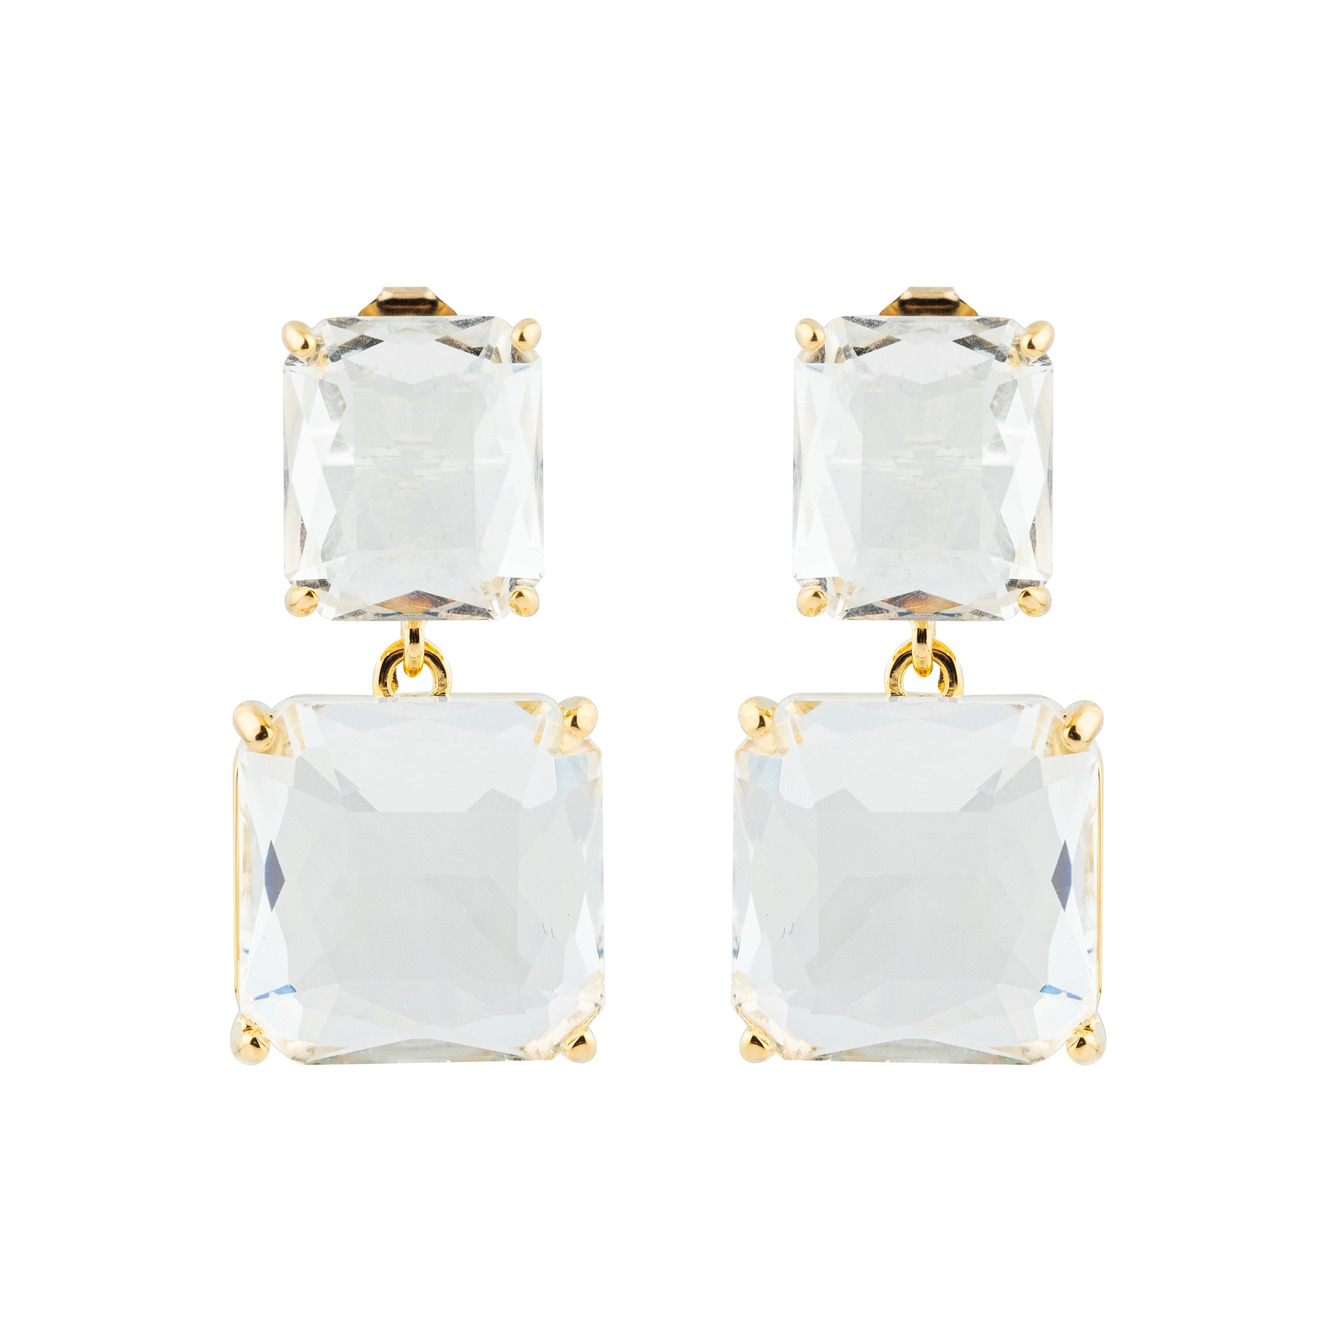 Herald Percy Двойные золотистые серьги с белыми кристаллами цена и фото